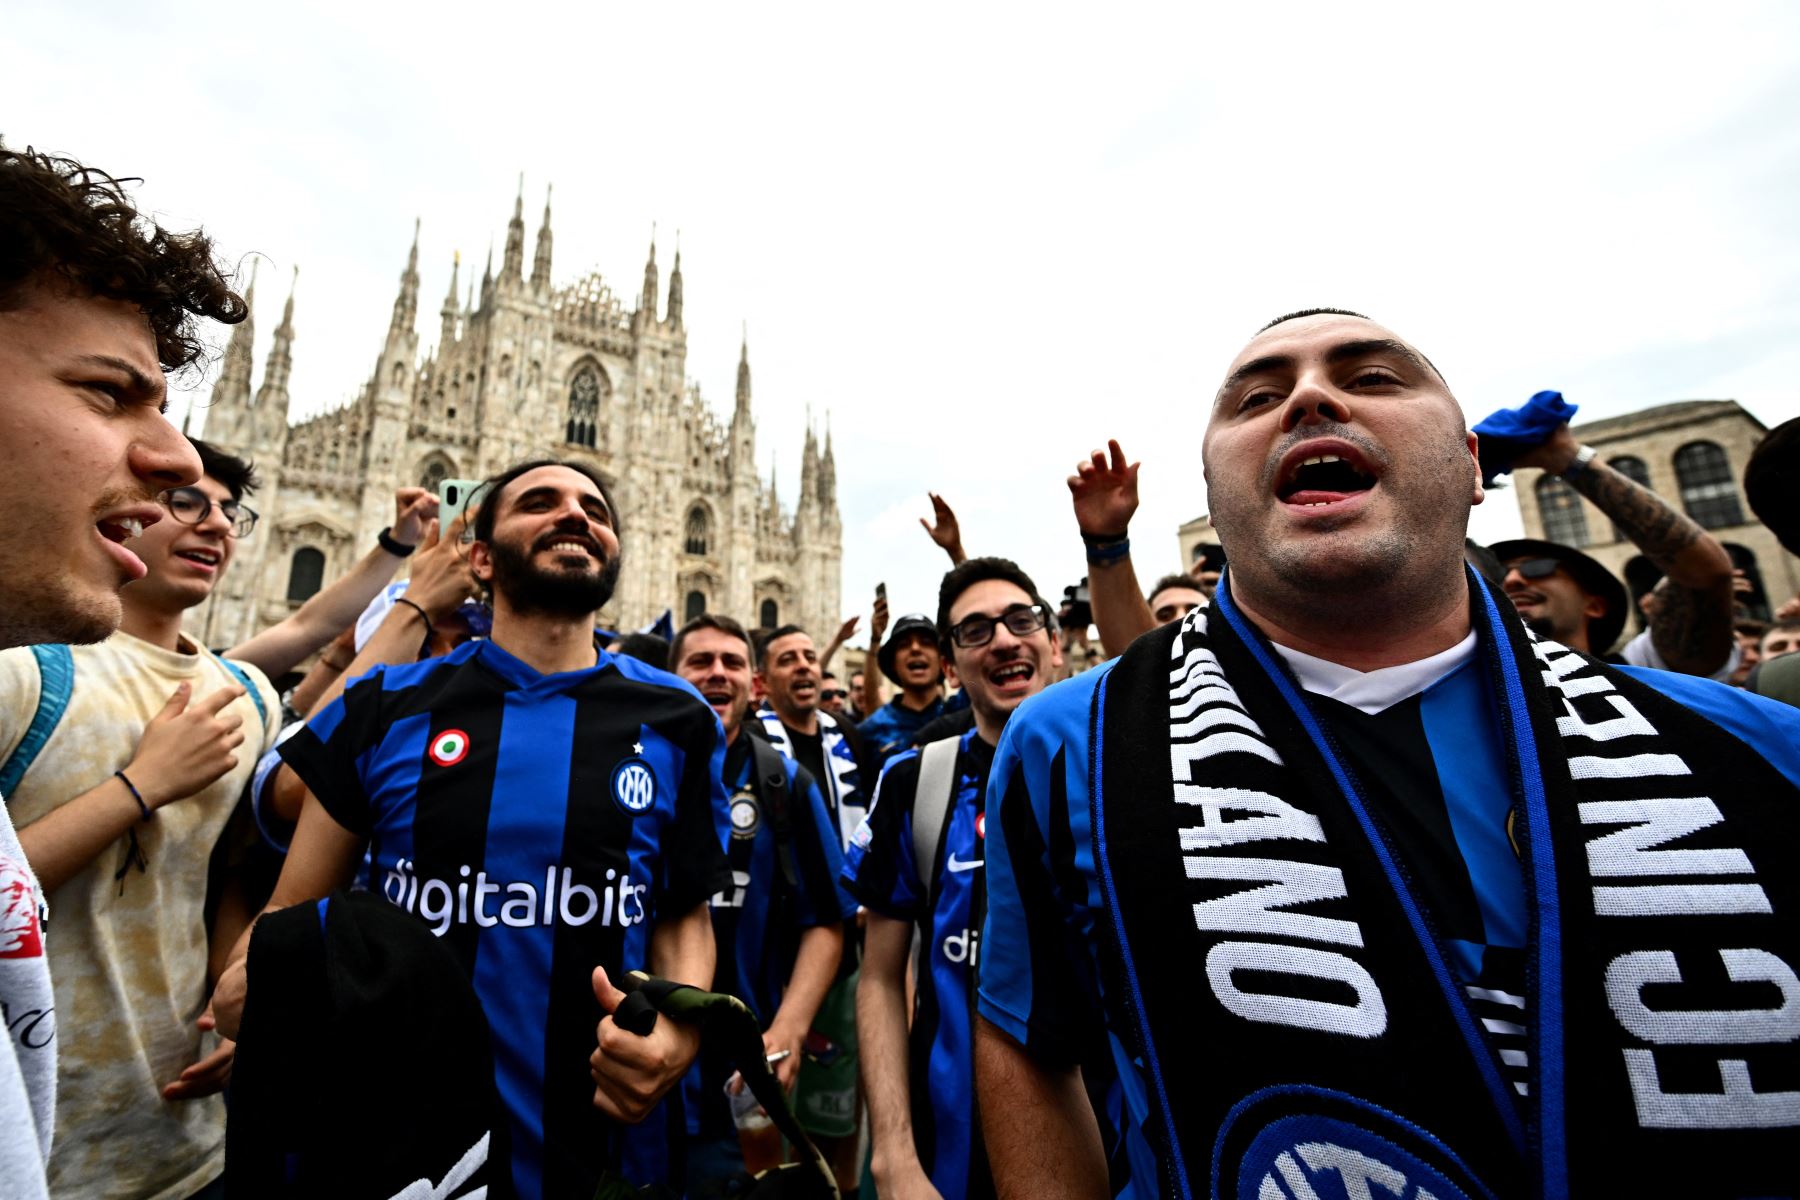 Los hinchas del Inter de Milán animan en la Plaza del Duomo en Milán antes del partido de fútbol final de la Liga de Campeones de la UEFA entre el Inter de Milán y el Manchester City en el Estadio Olímpico Ataturk de Estambul.
Foto: AFP